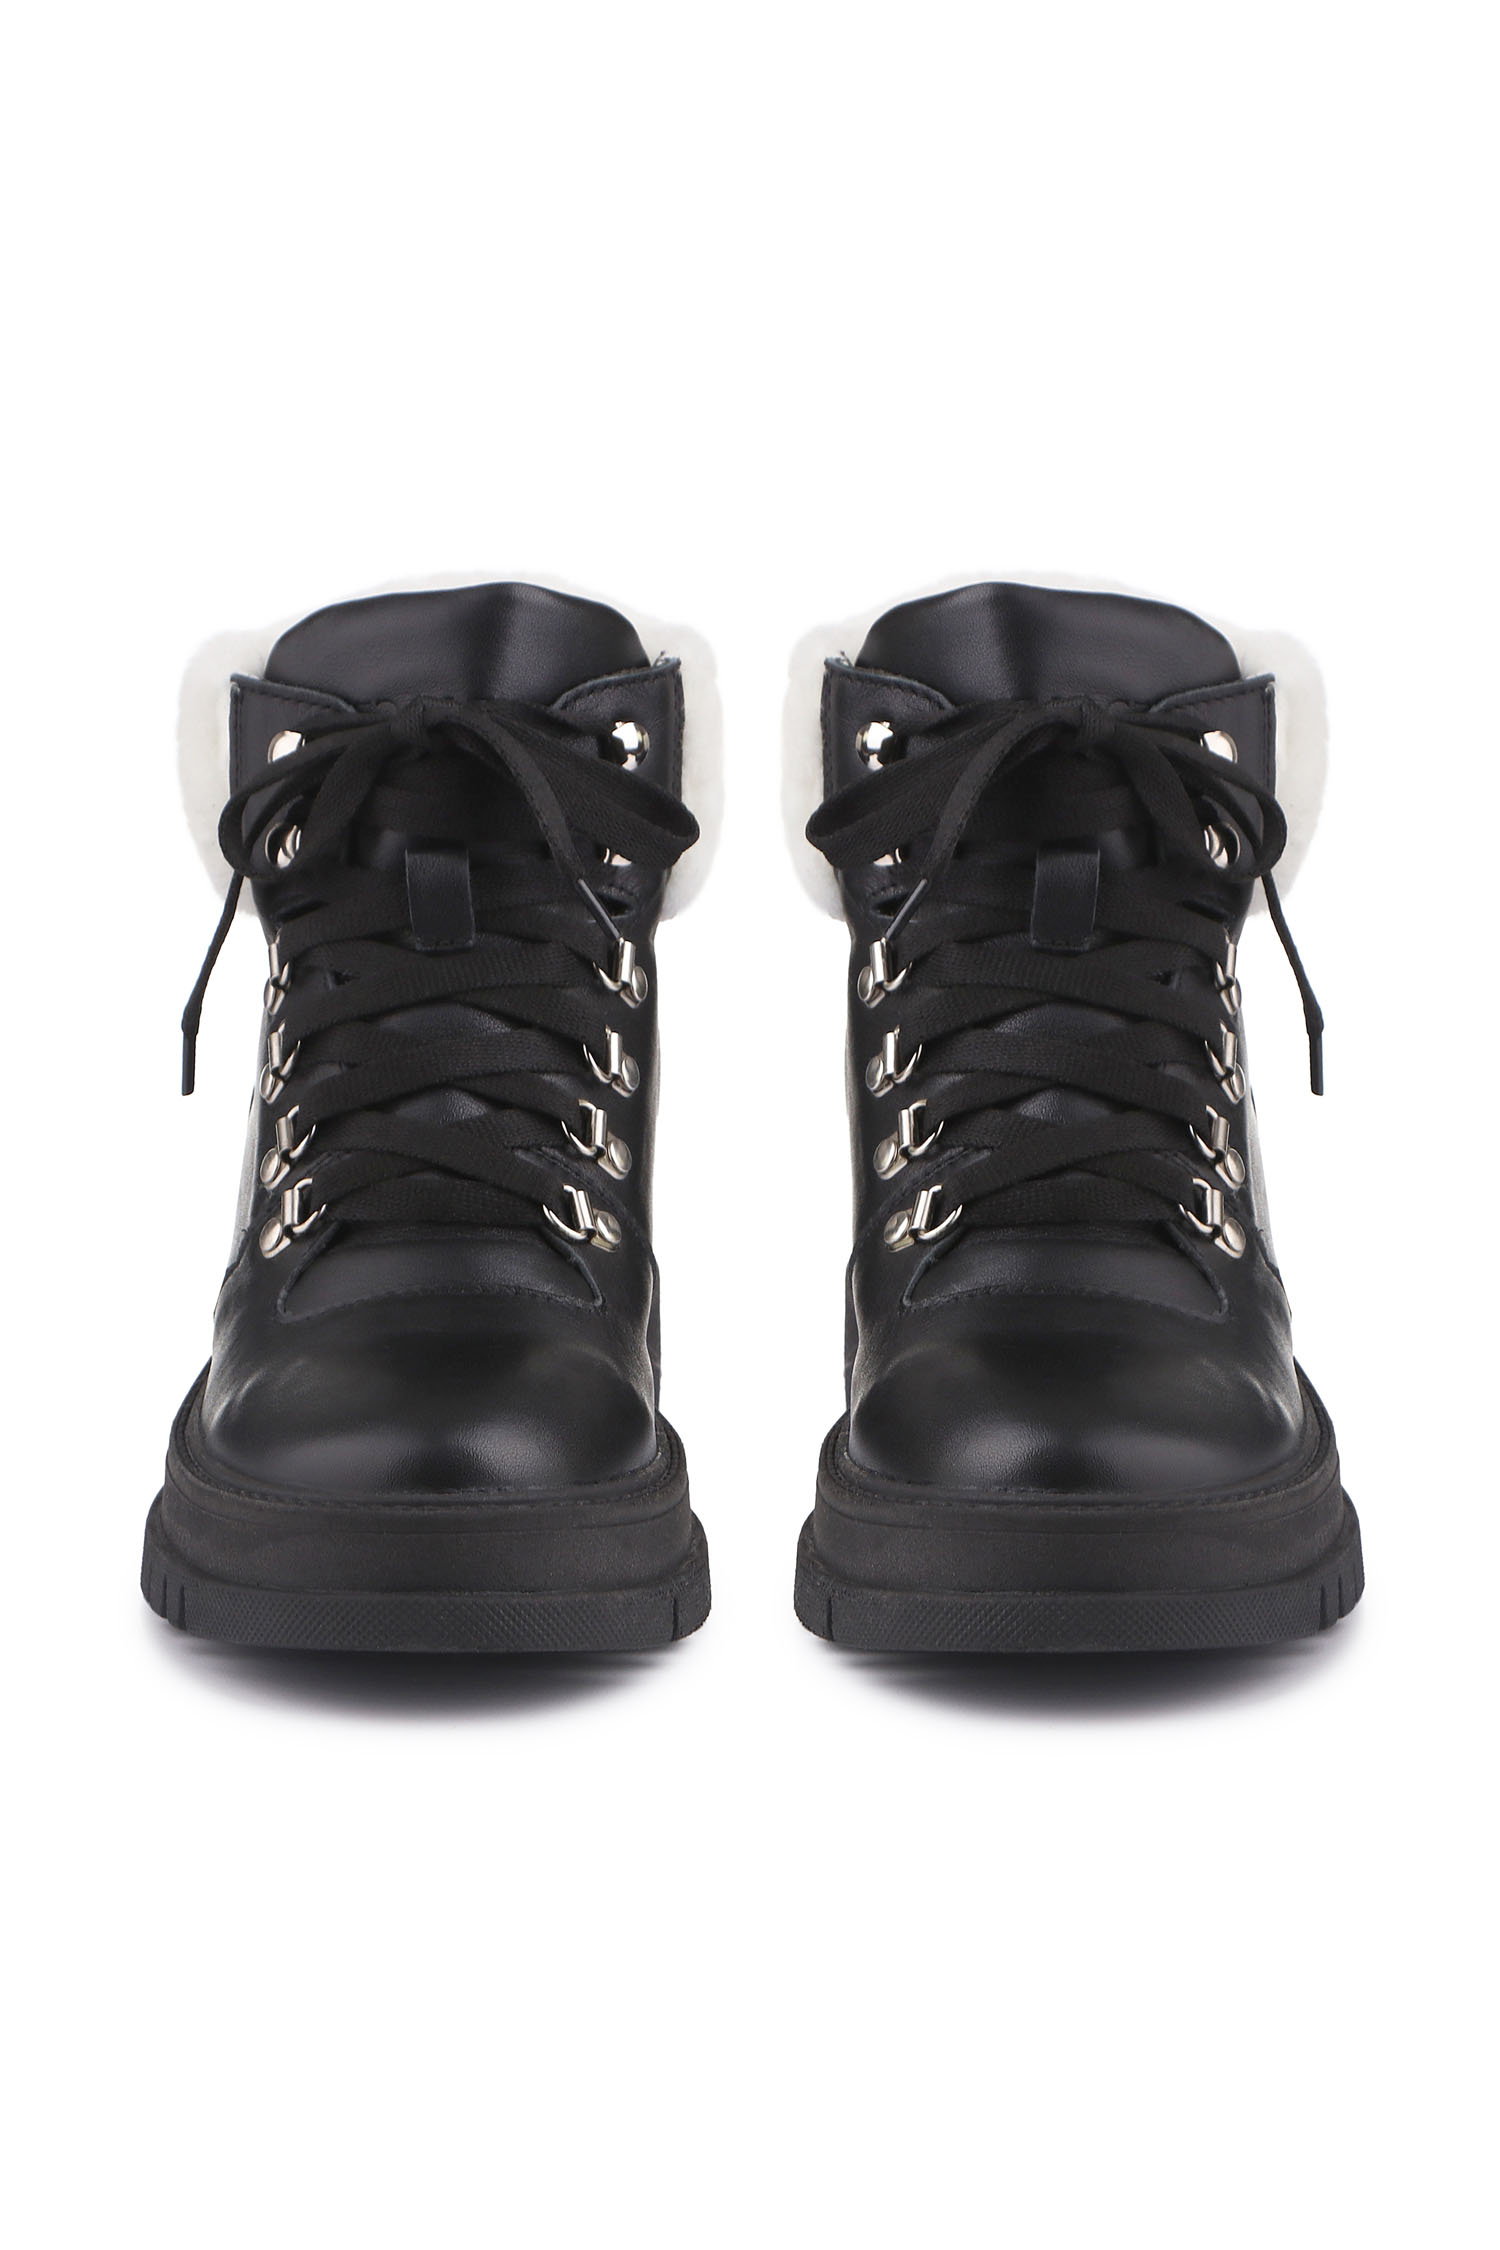 Зимові черевики Hiking boots чорні з білим хутром - THE LACE фото 123278